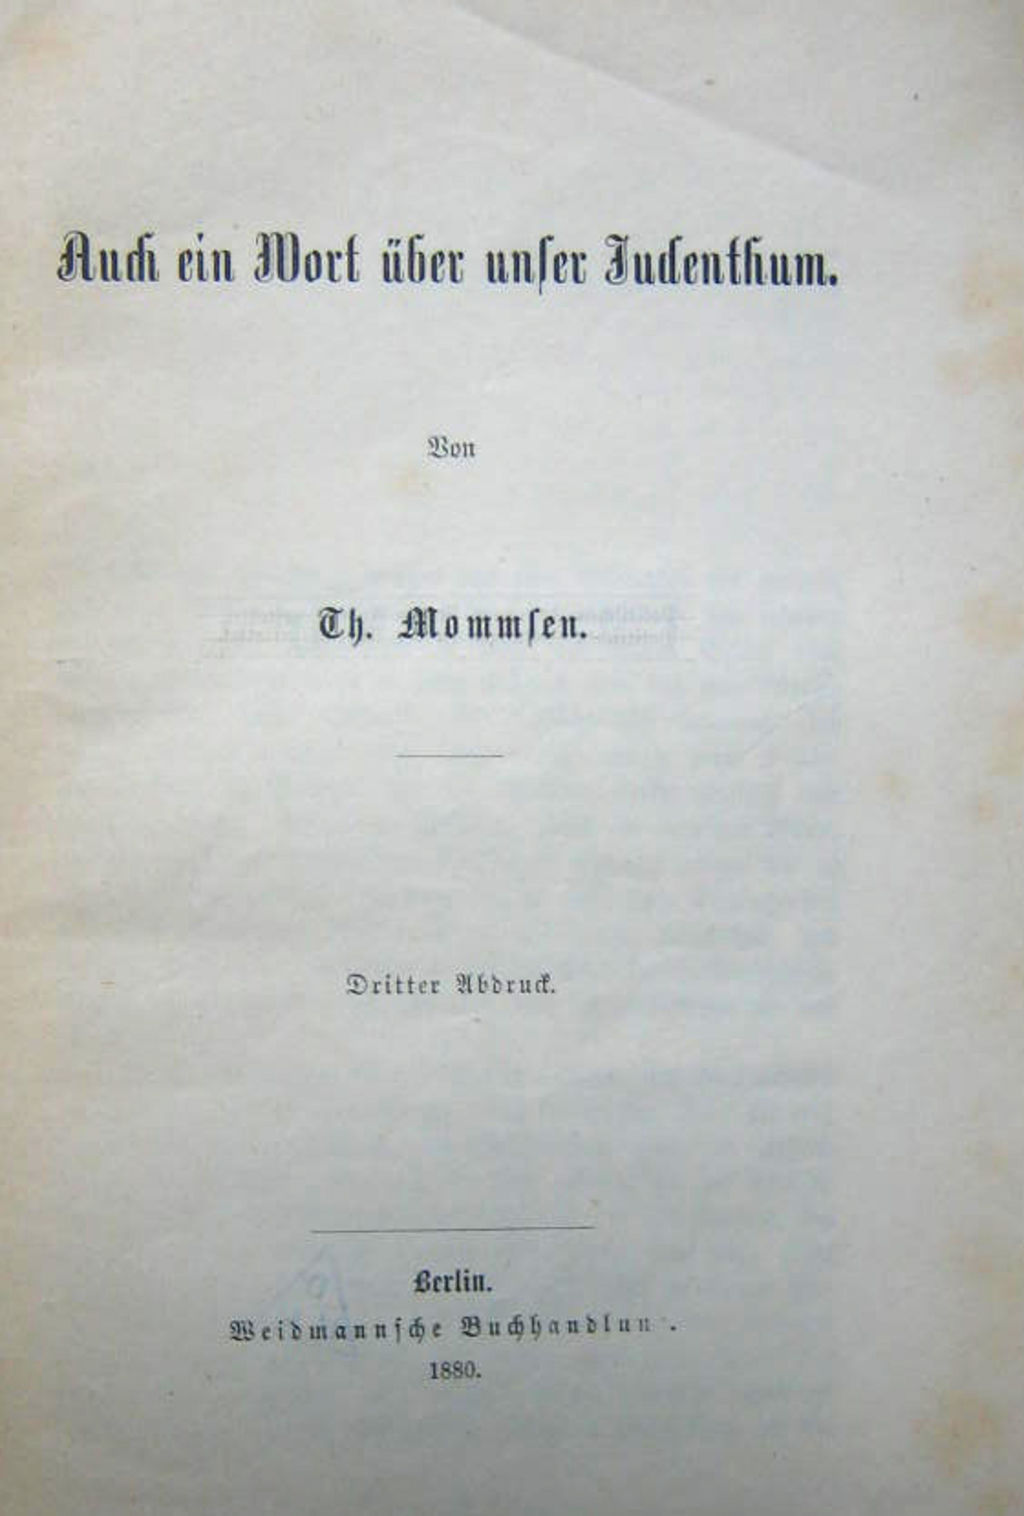 Broschüre: Mommsen, Theodor: "Auch ein Wort über unser Judenthum", 1880